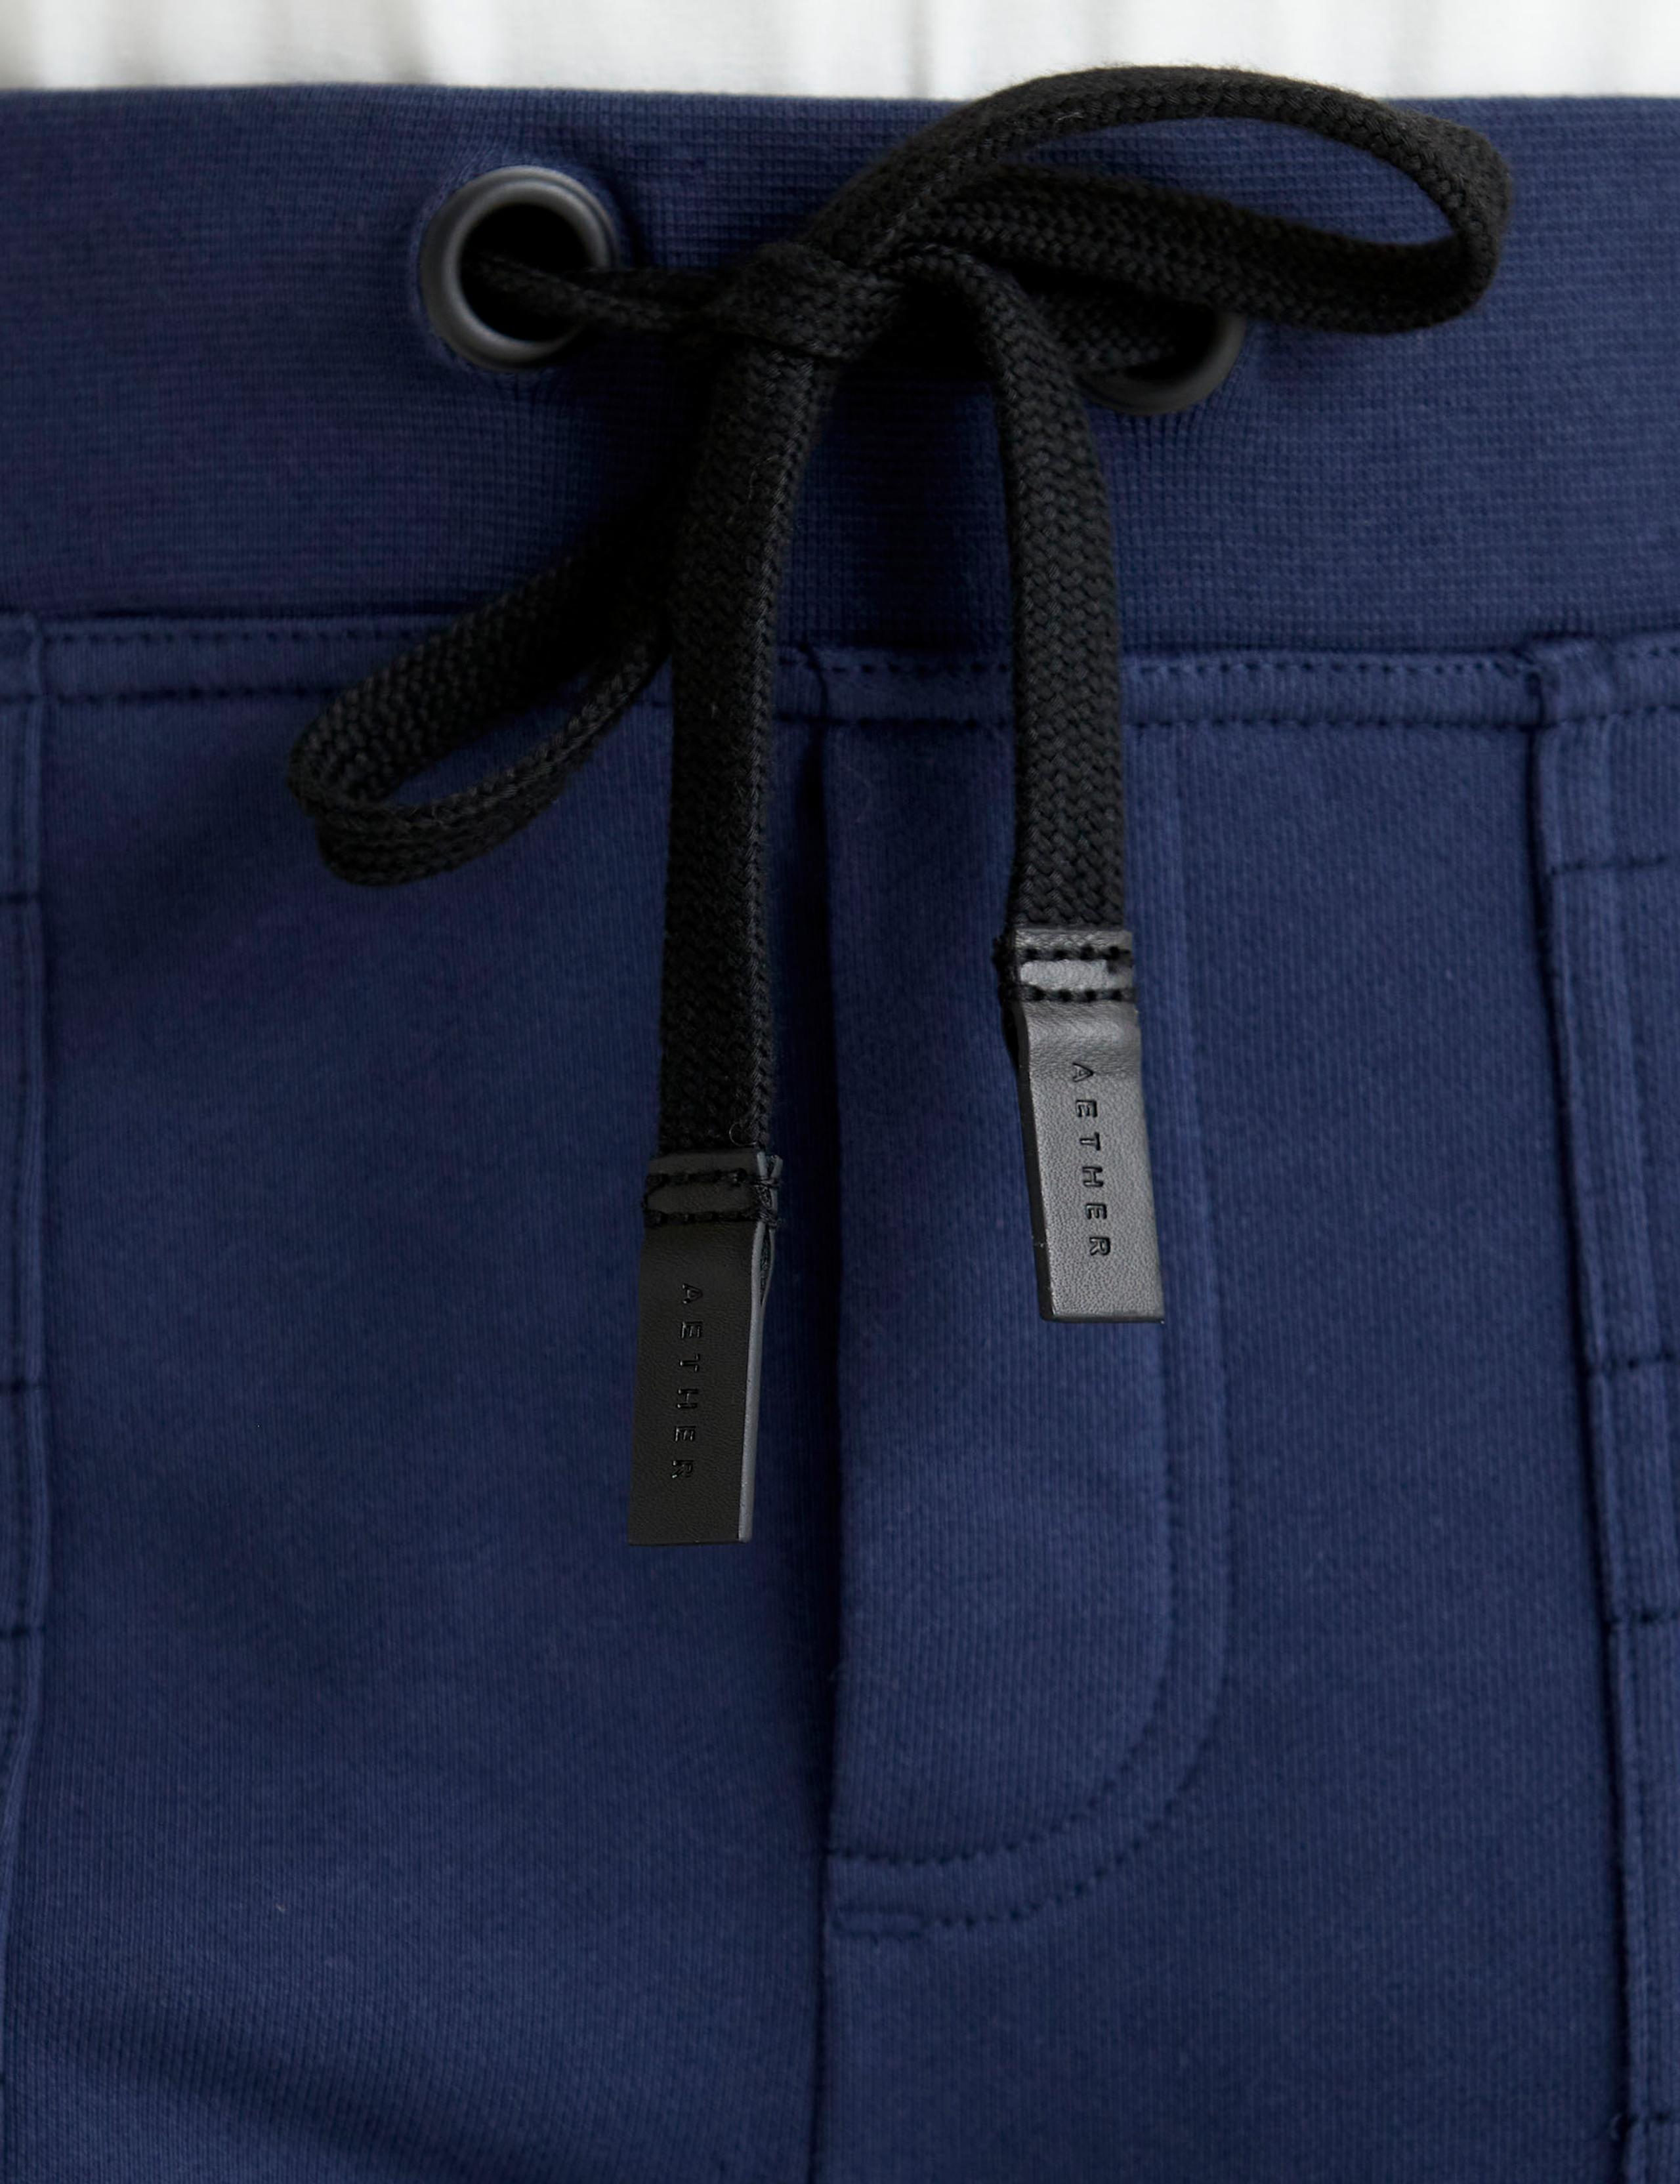 Closeup view of Felix Pant waistband